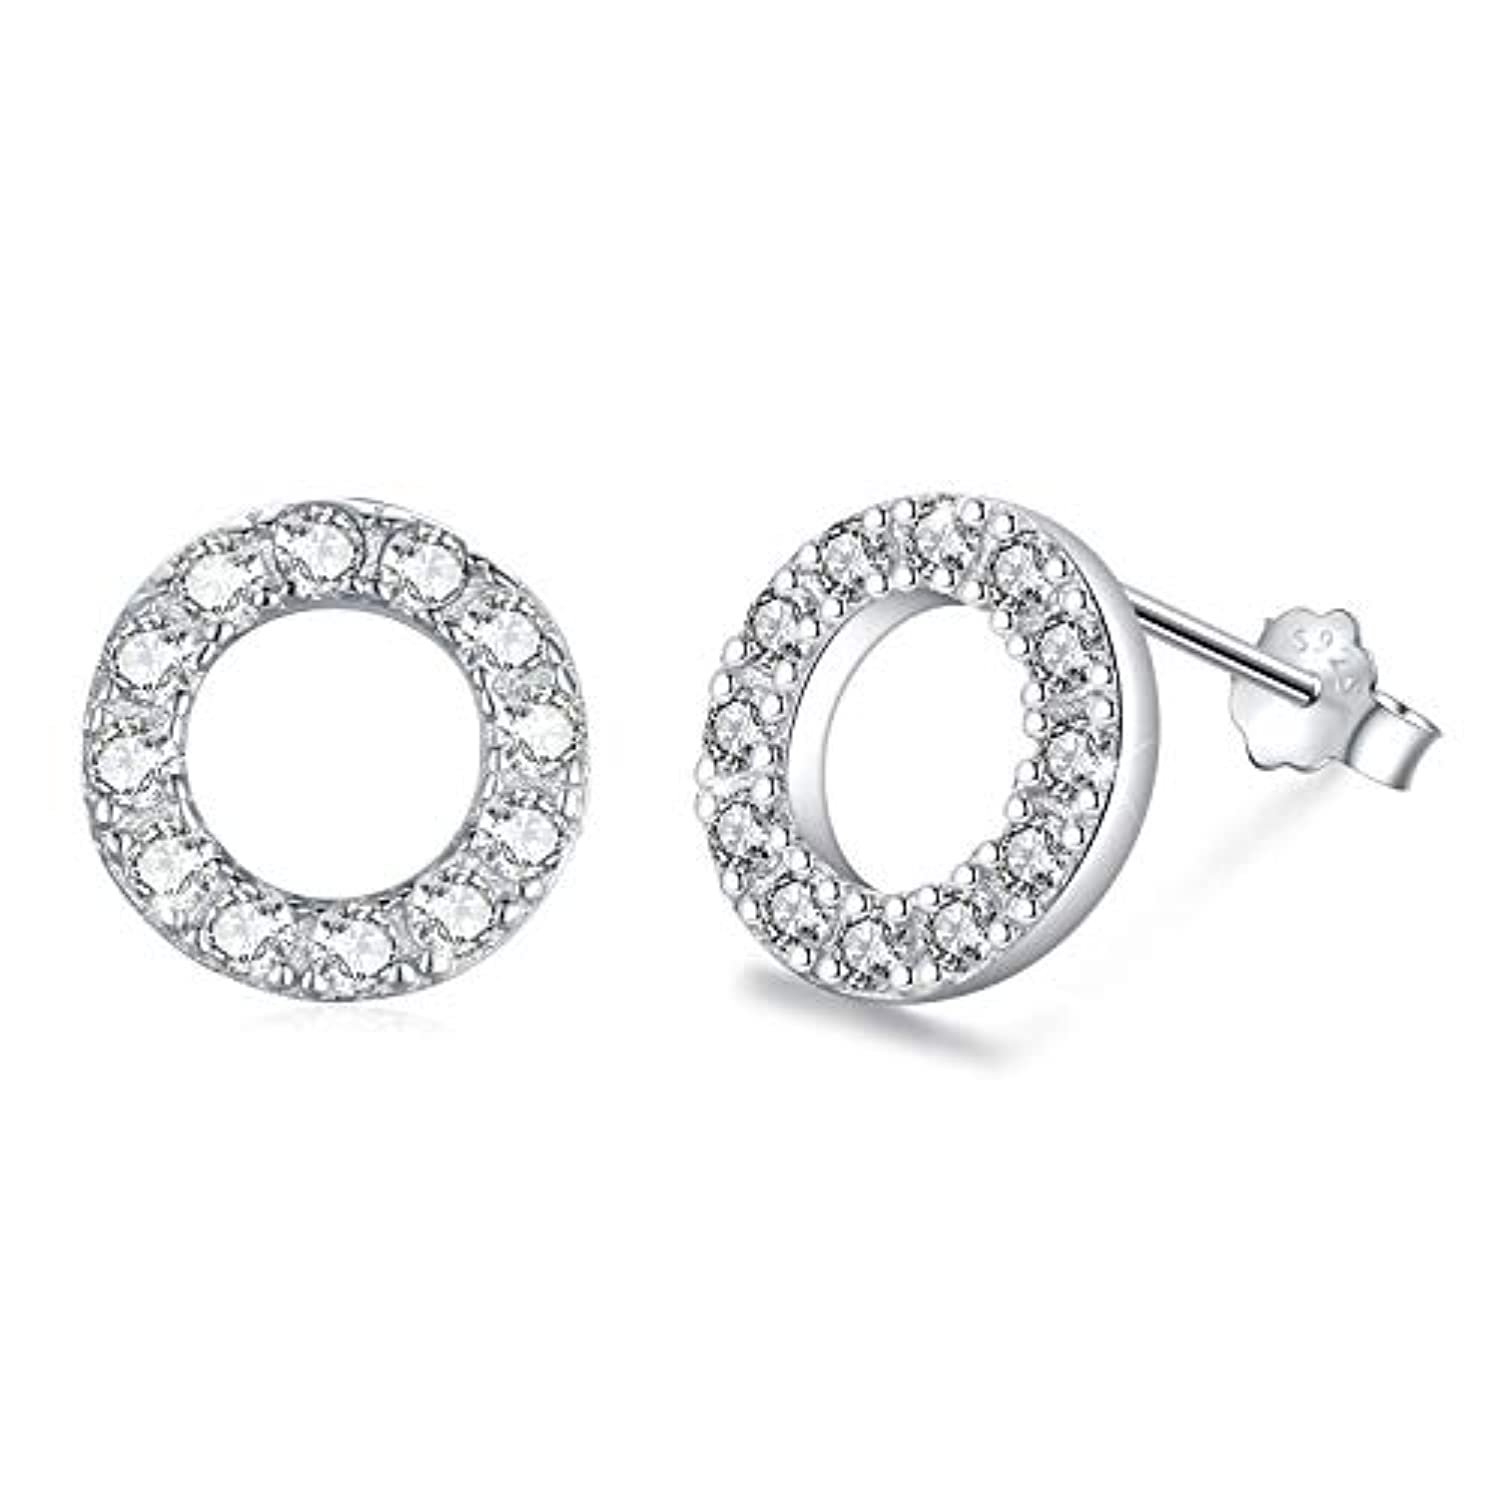 S925 Sterling Silver  Round Cubic Zircon Stud Earrings  for Women Men